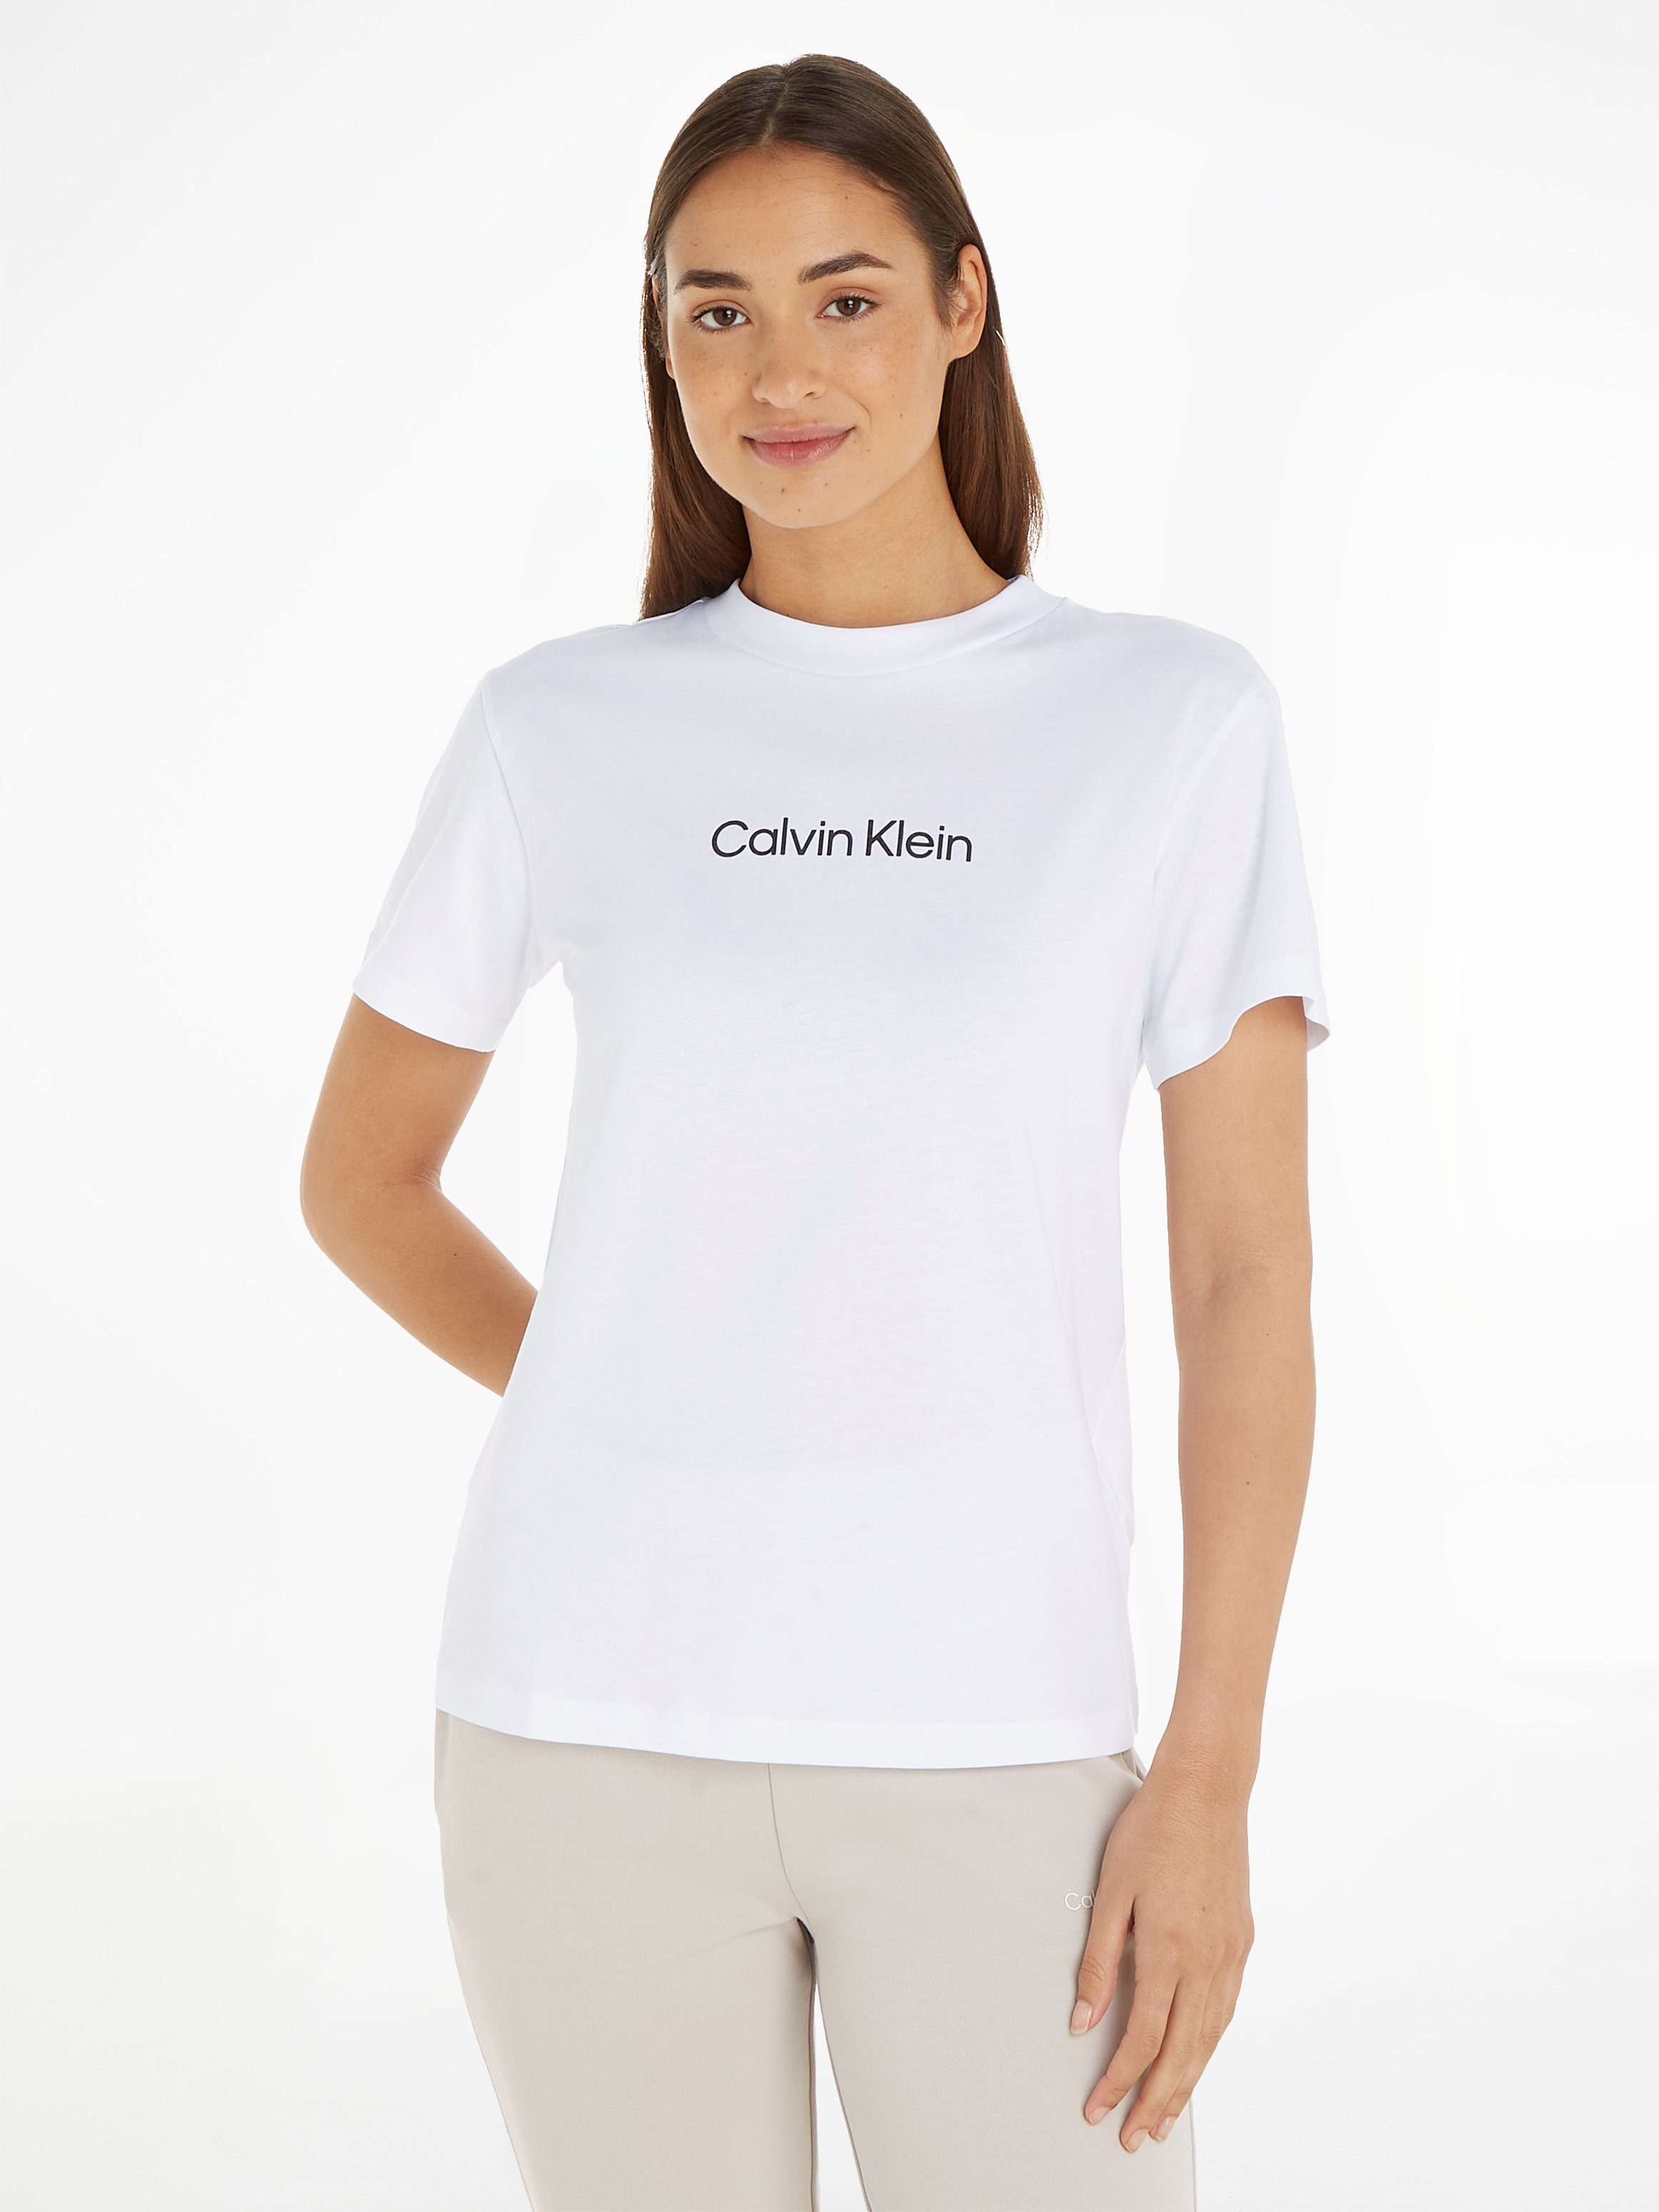 Calvin Klein T-Shirt Shirt HERO LOGO REGULAR weiß